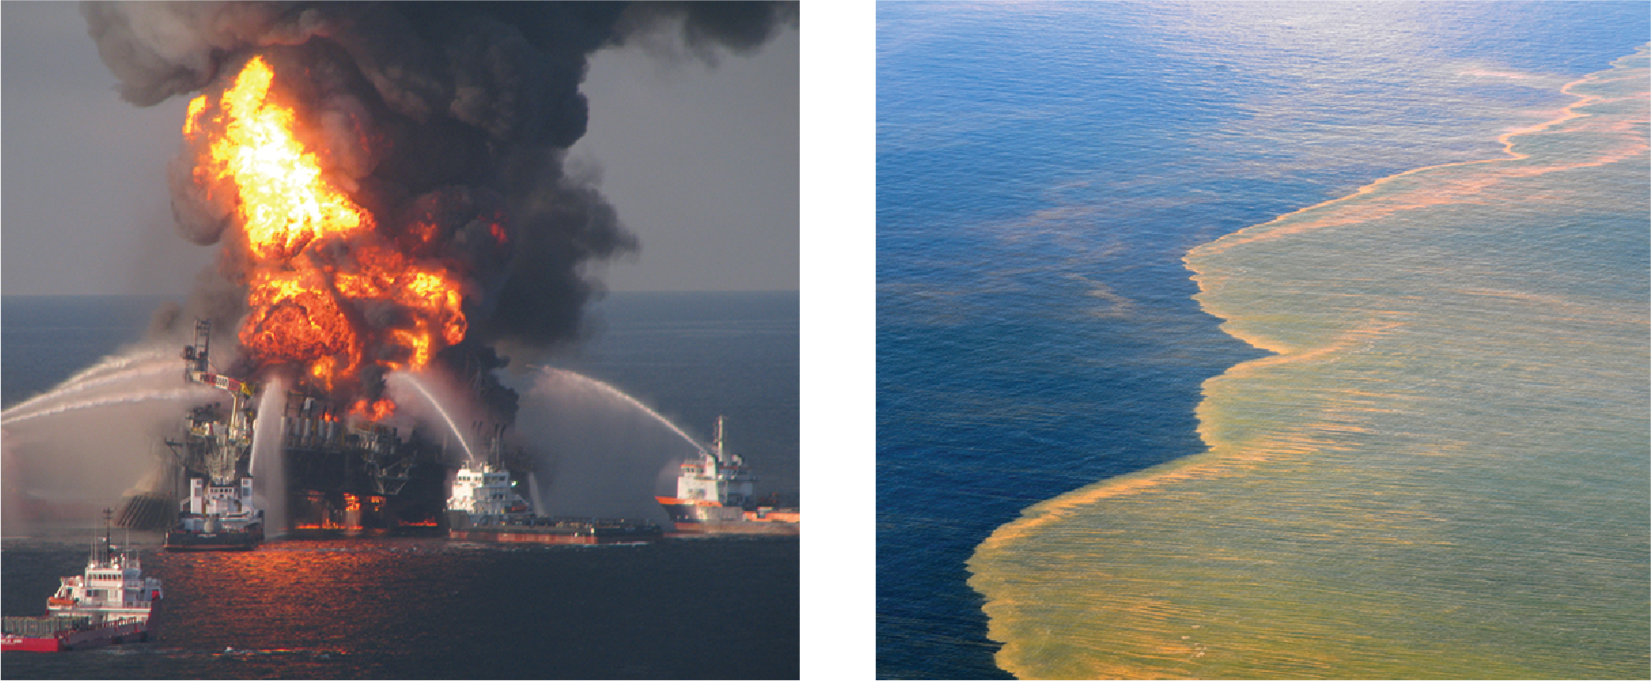 Gauche : La plate-forme pétrolière Deepwater Horizon en feu, entourée de plusieurs navires pulvérisant des matériaux de suppression. Droite : Pétrole flottant à la surface de l'eau dans le golfe du Mexique.